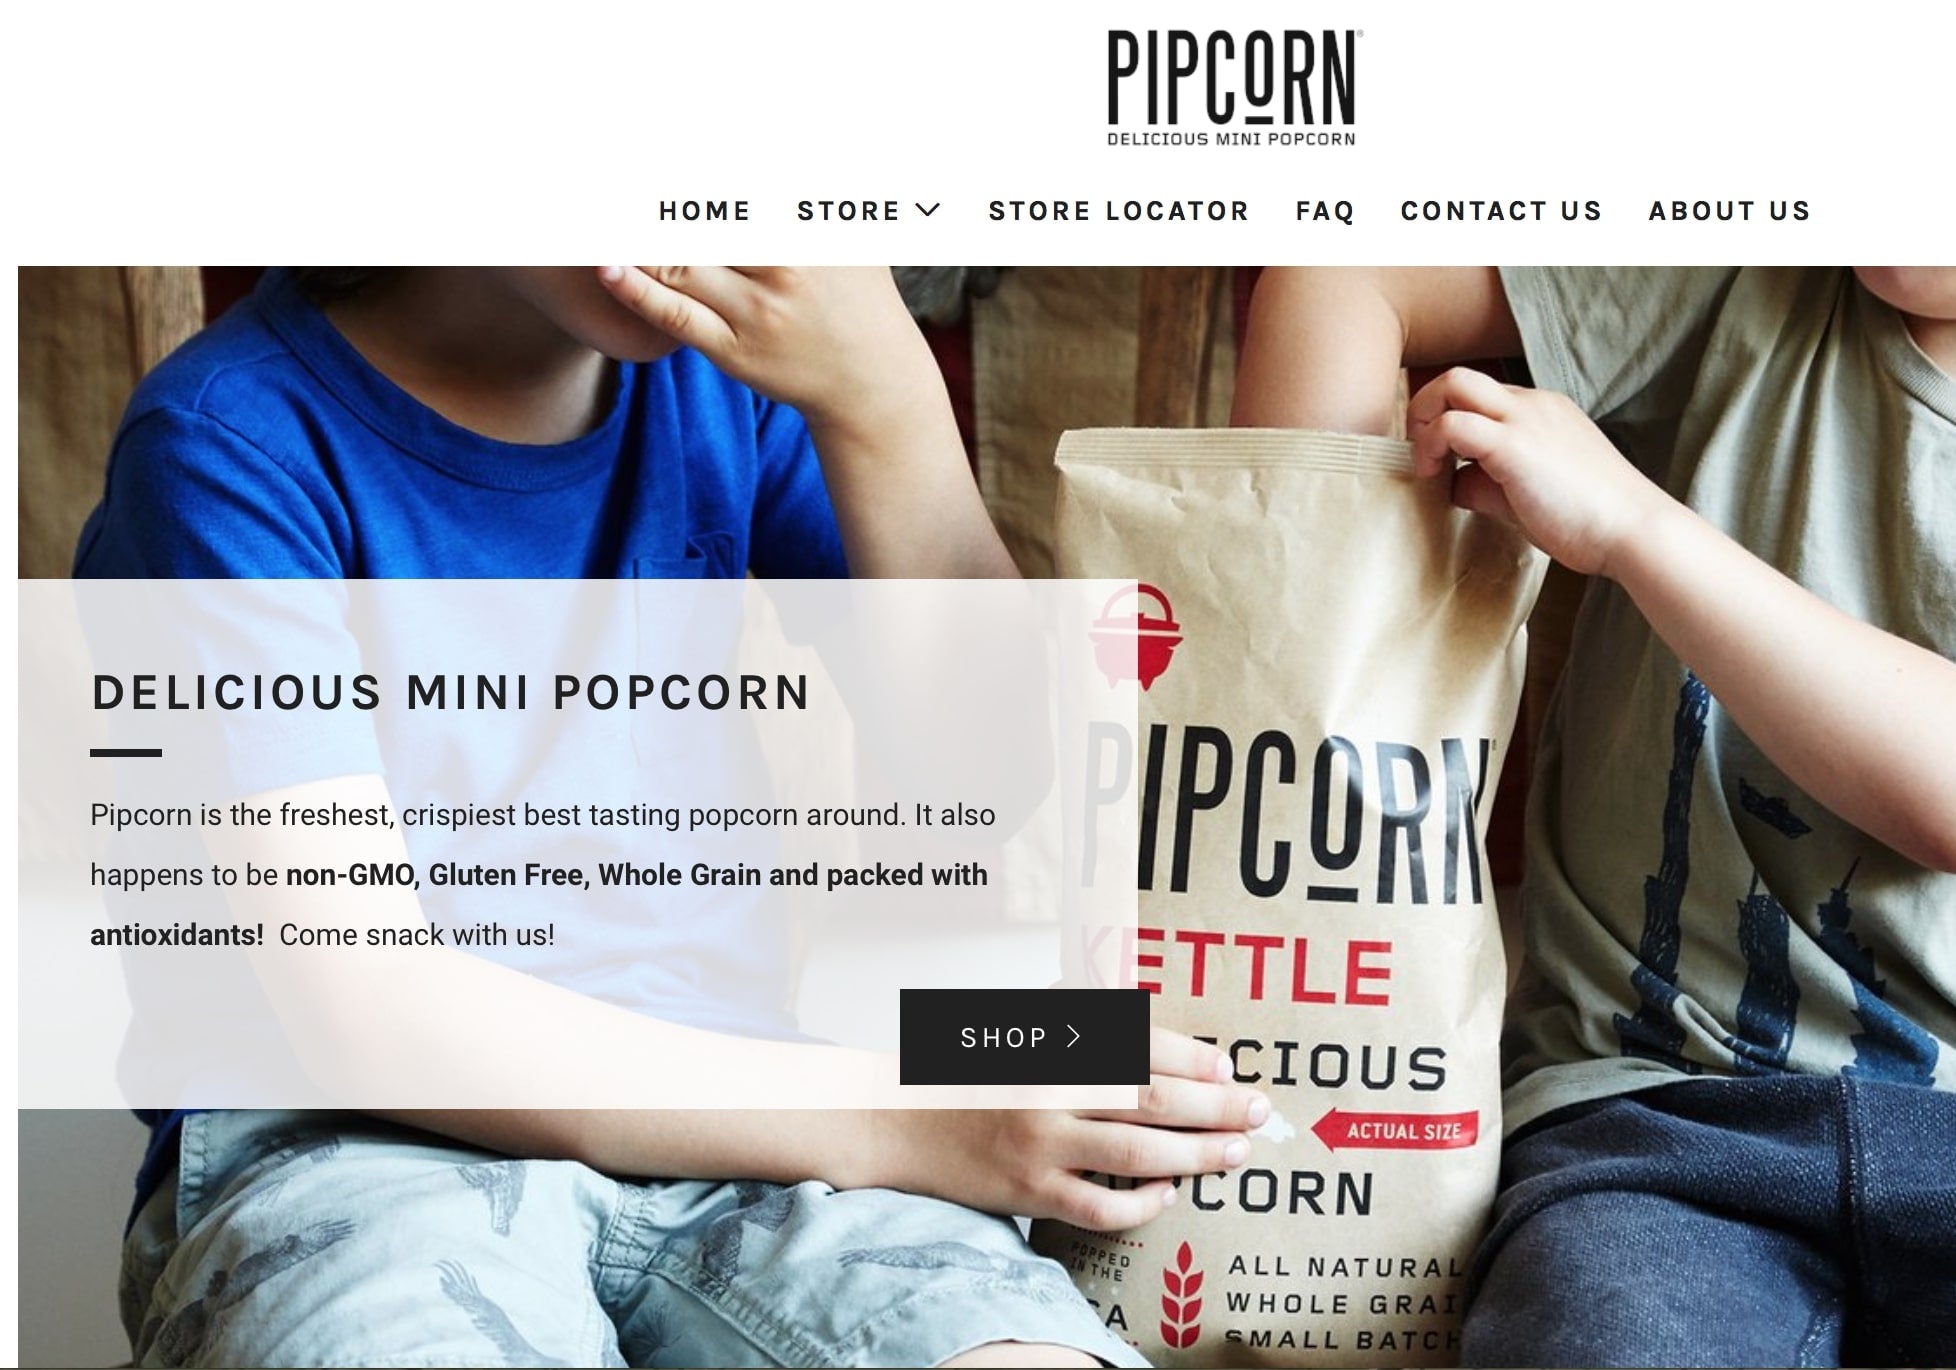 pipcorn unique selling proposition